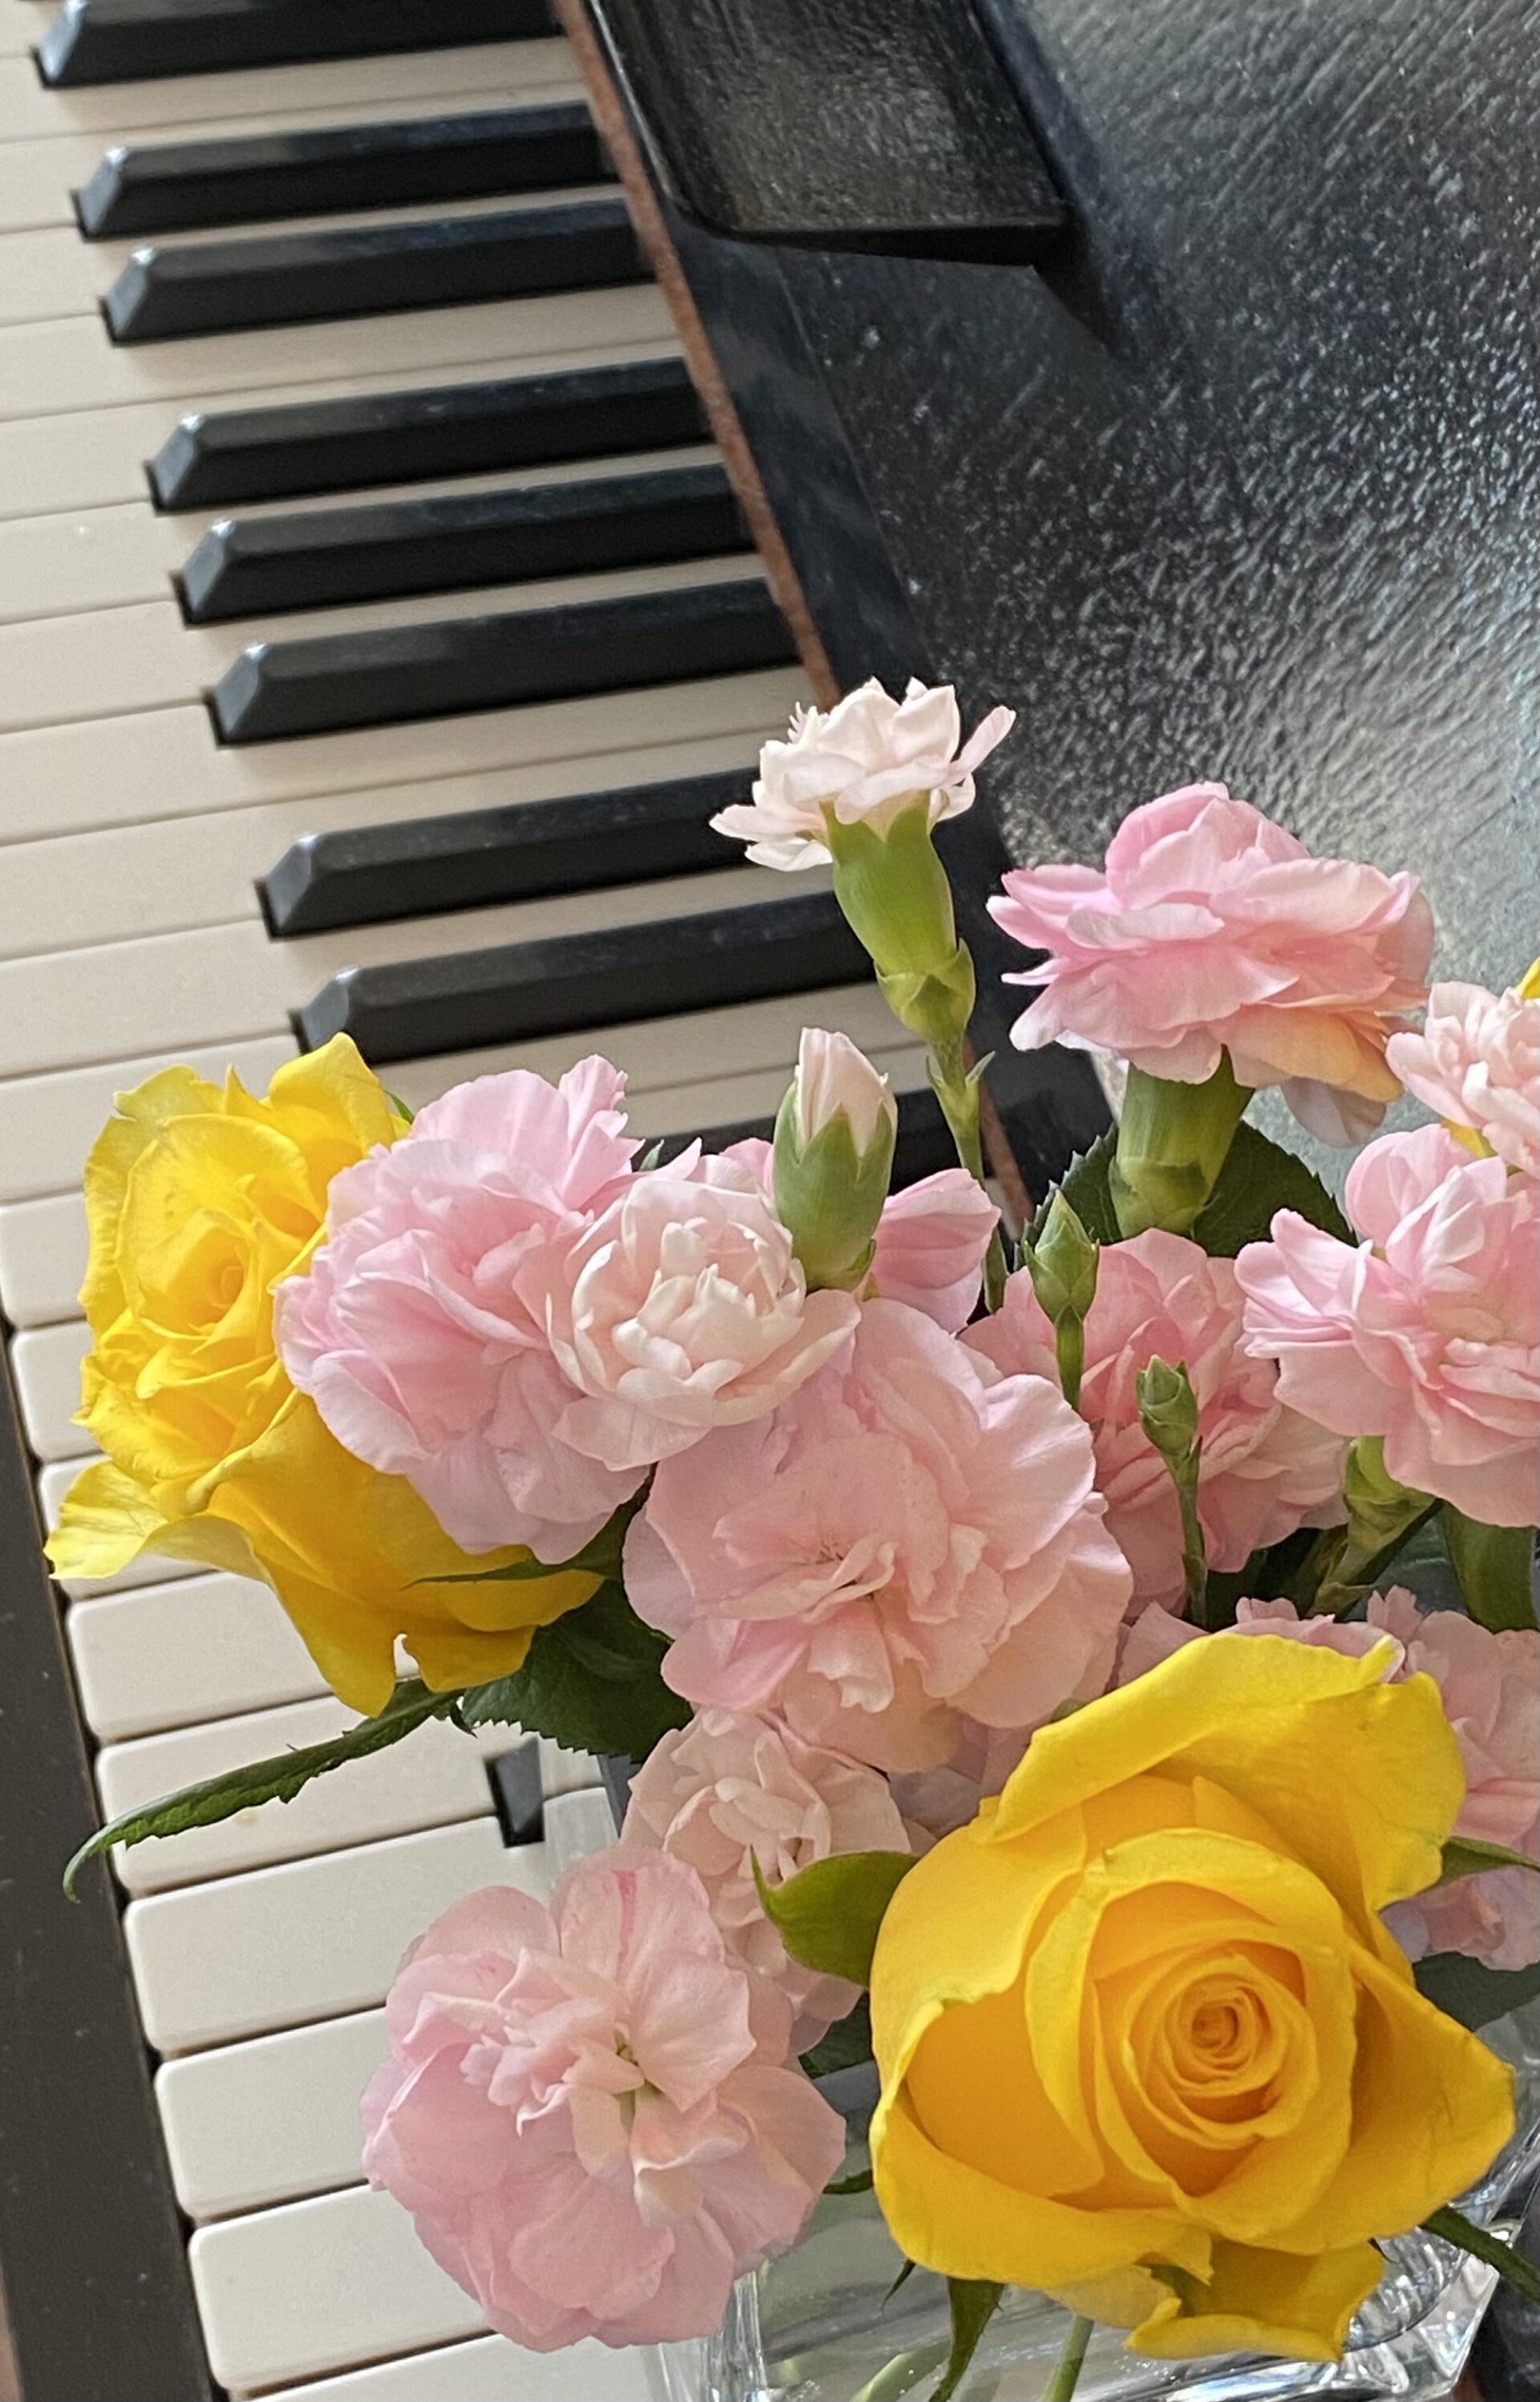 Gule roser og rosa nelliker foran tangenter